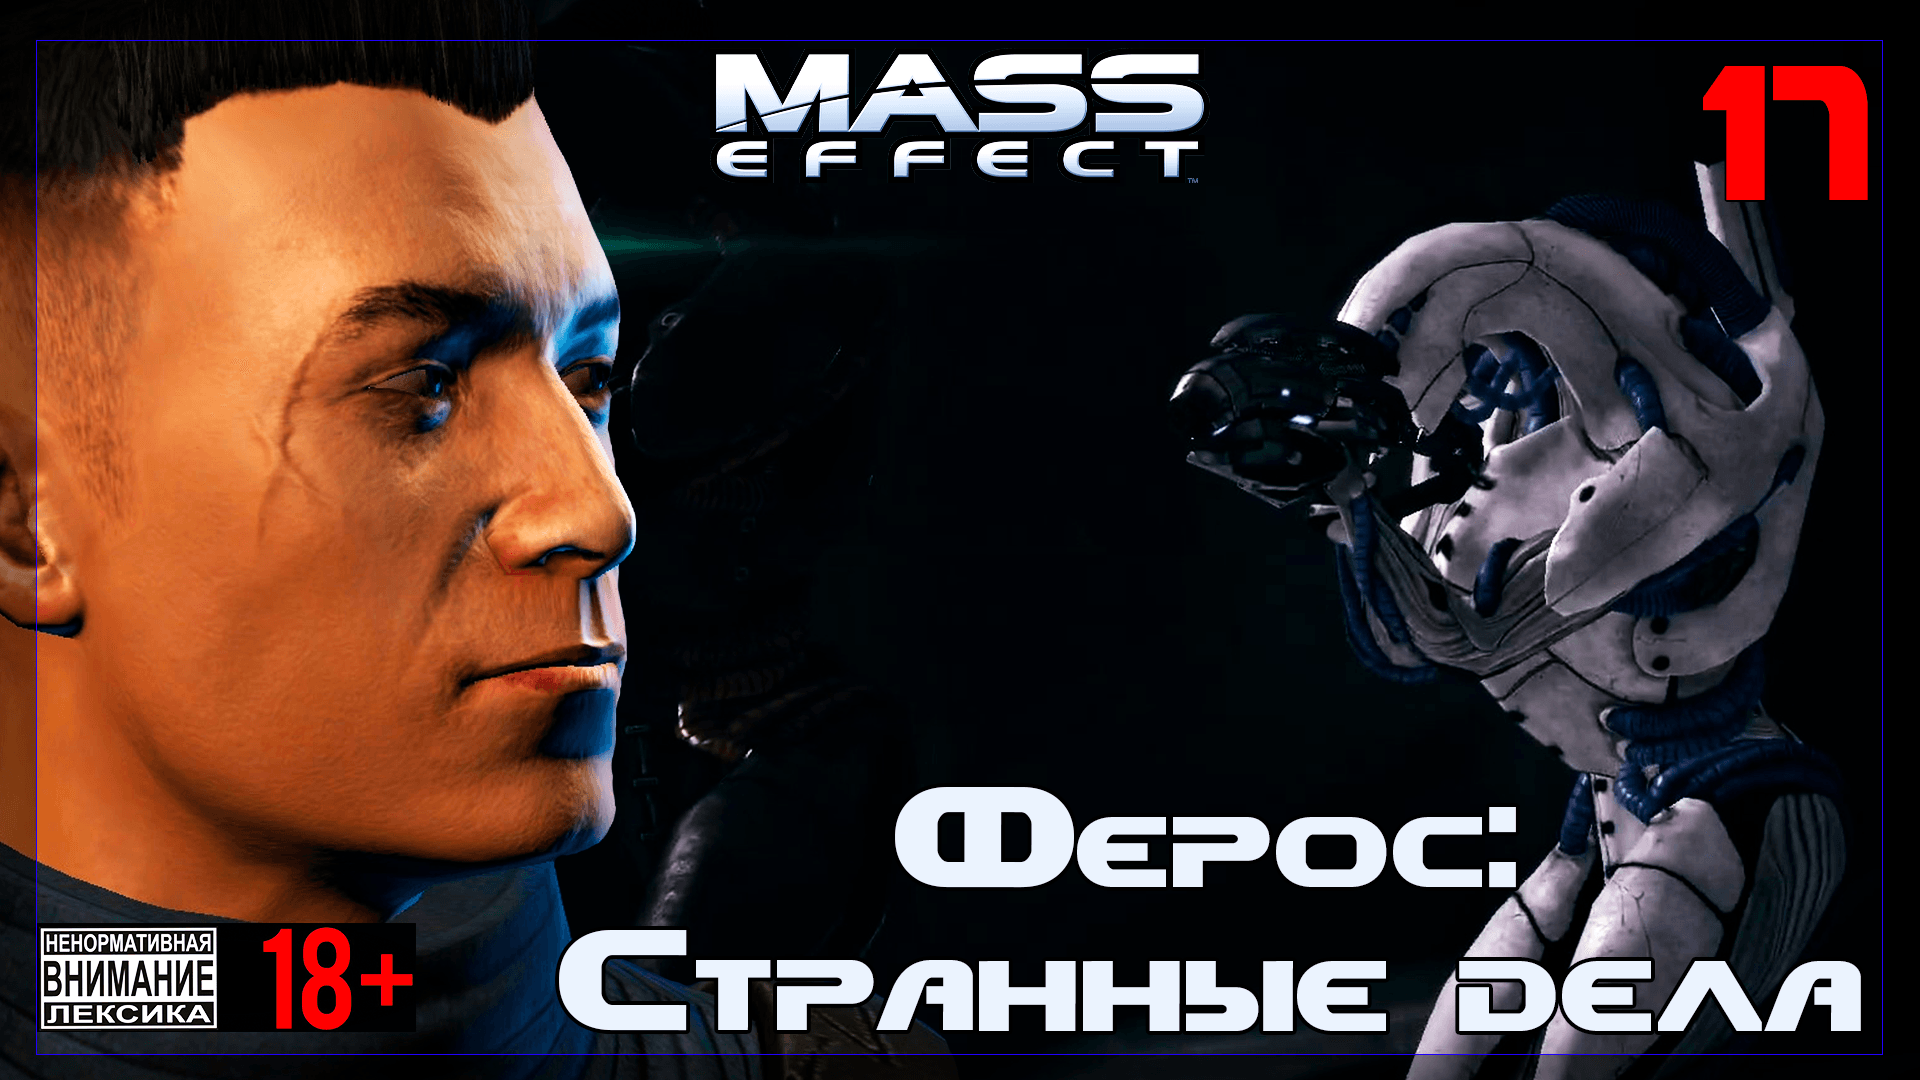 ? Mass Effect / Original #17 Ферос: Странные дела